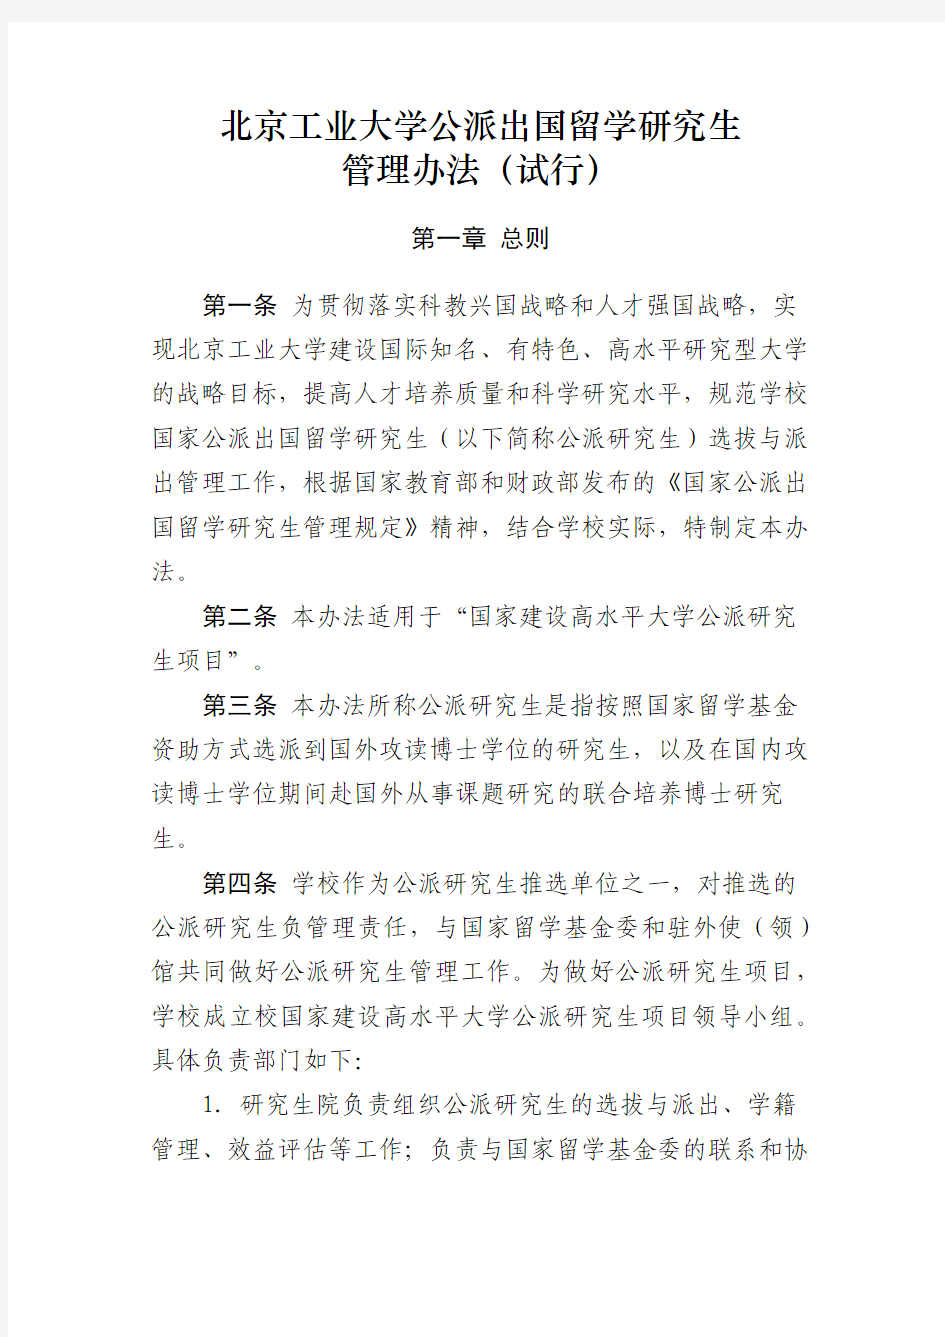 北京工业大学公派出国留学研究生 管理办法(试行)